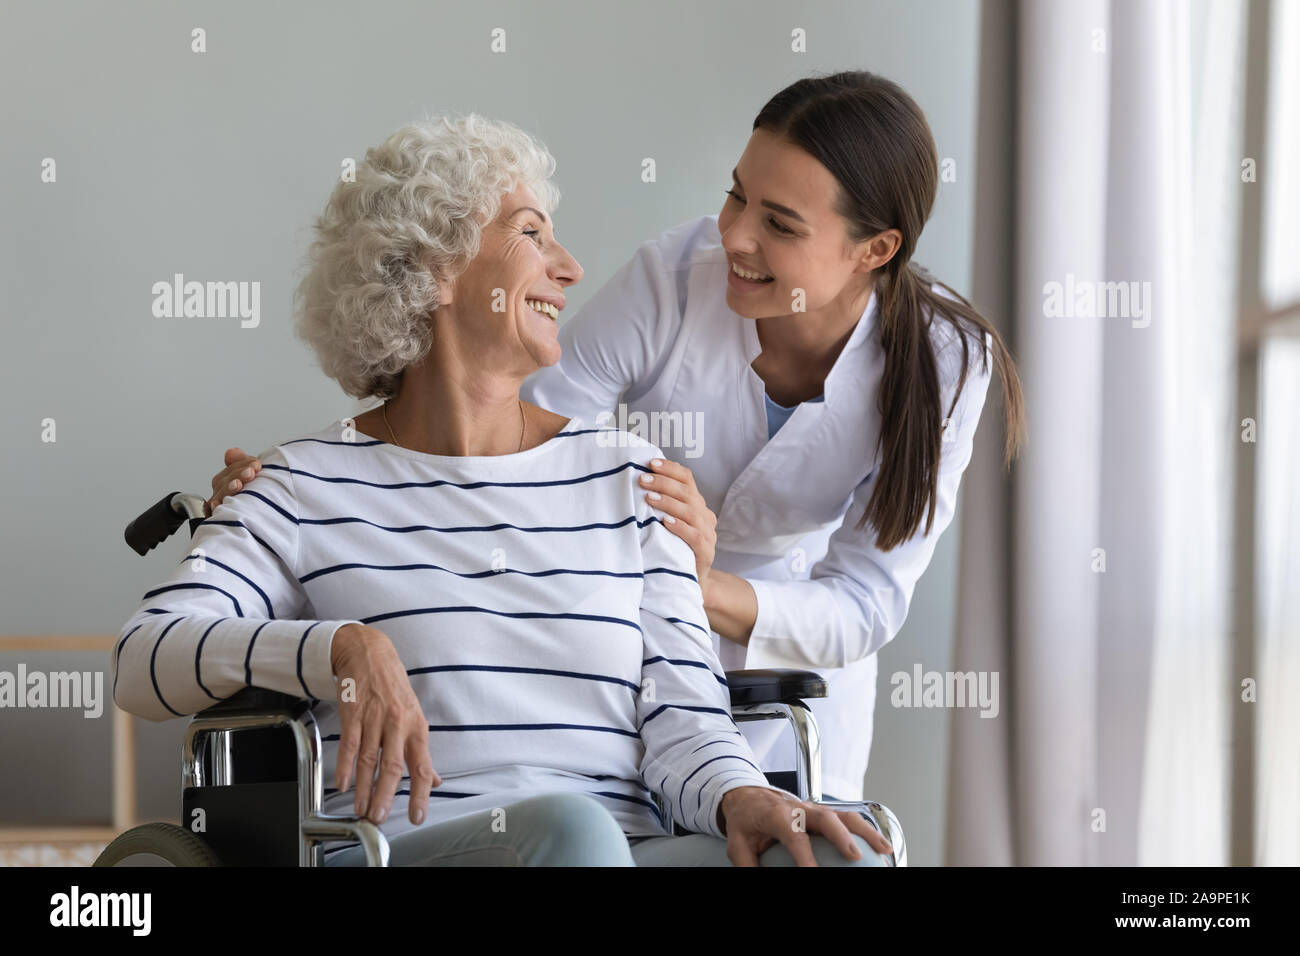 Felice giovane donna caregiver infermiere aiutare senior nonna sulla sedia a rotelle Foto Stock